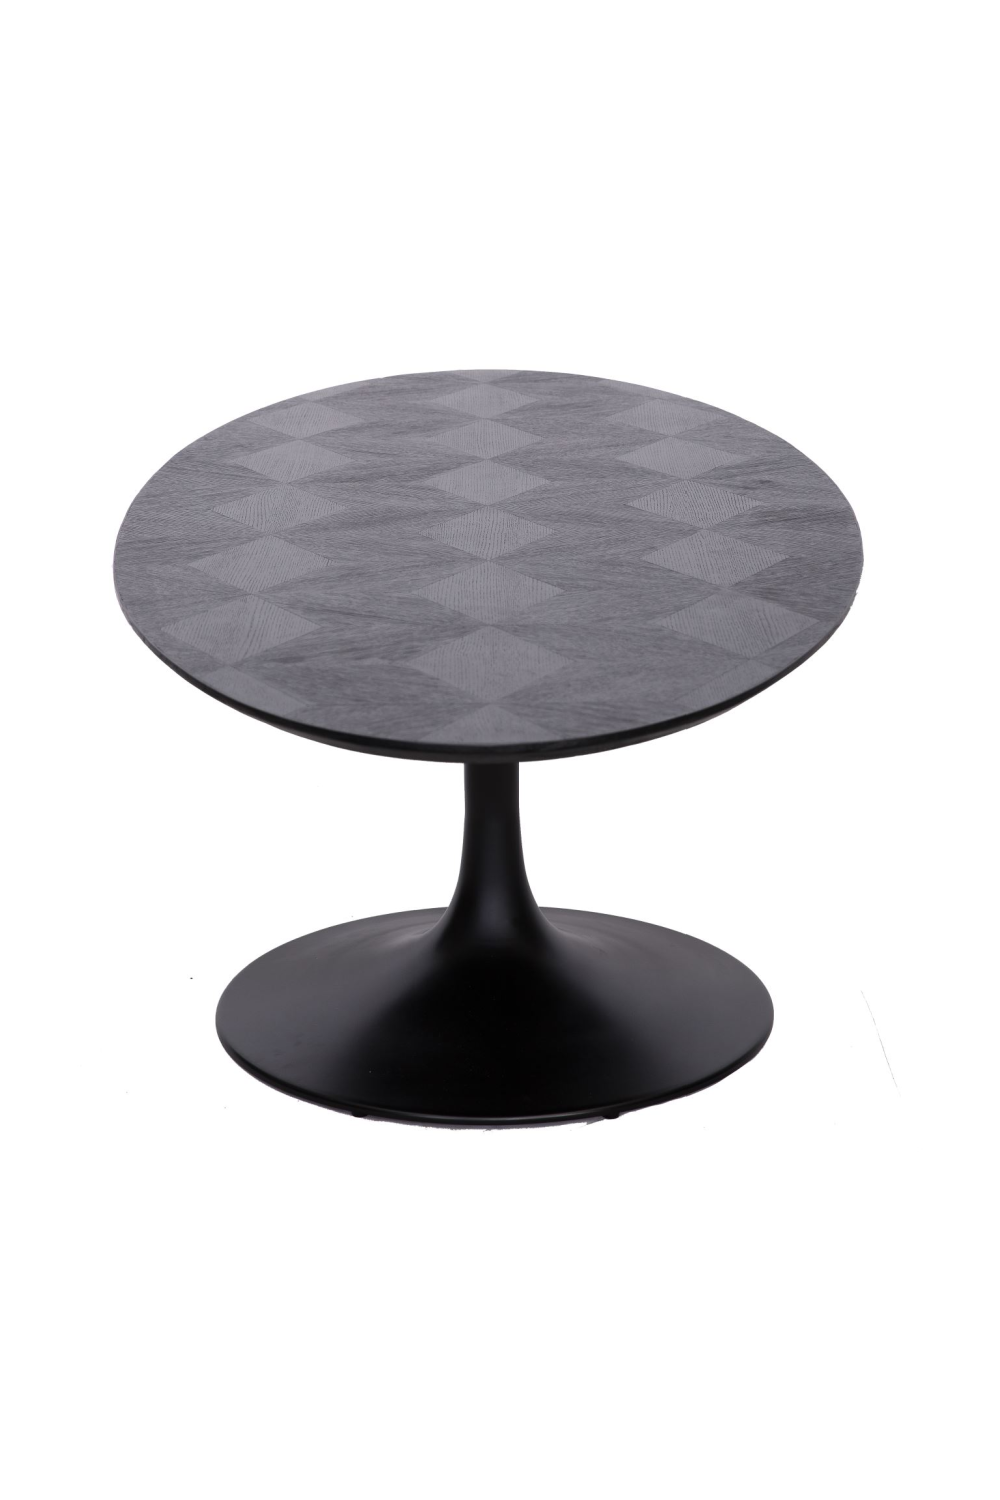 Oval Pedestal Dining Table | OROA Blax | Oroa.com